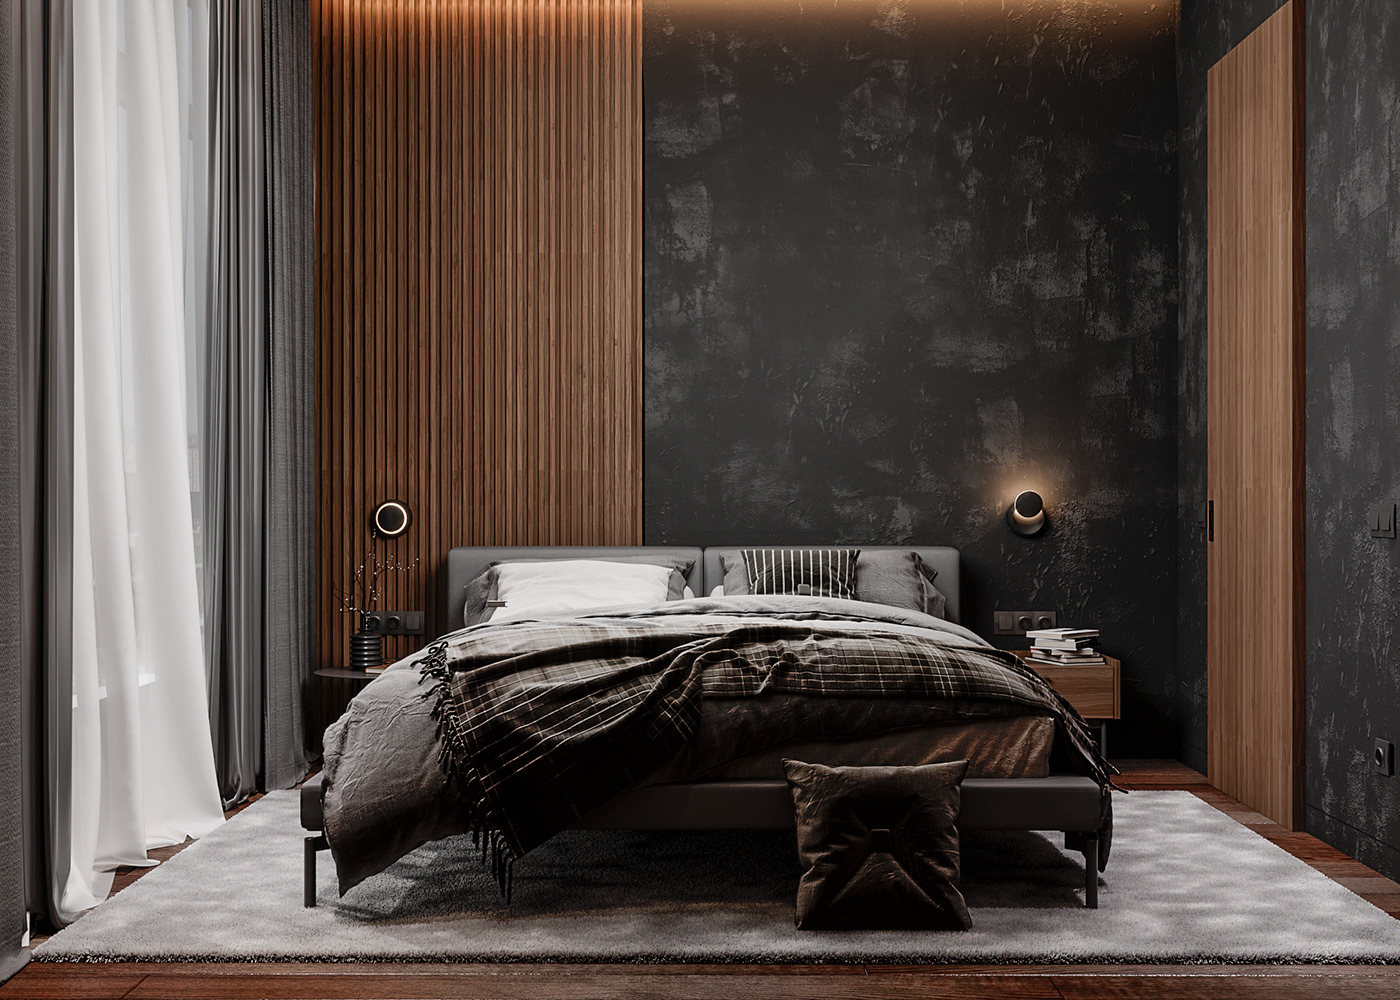 bedroom bedroom design visualization dark bedroom 3dsmax coronarenderer